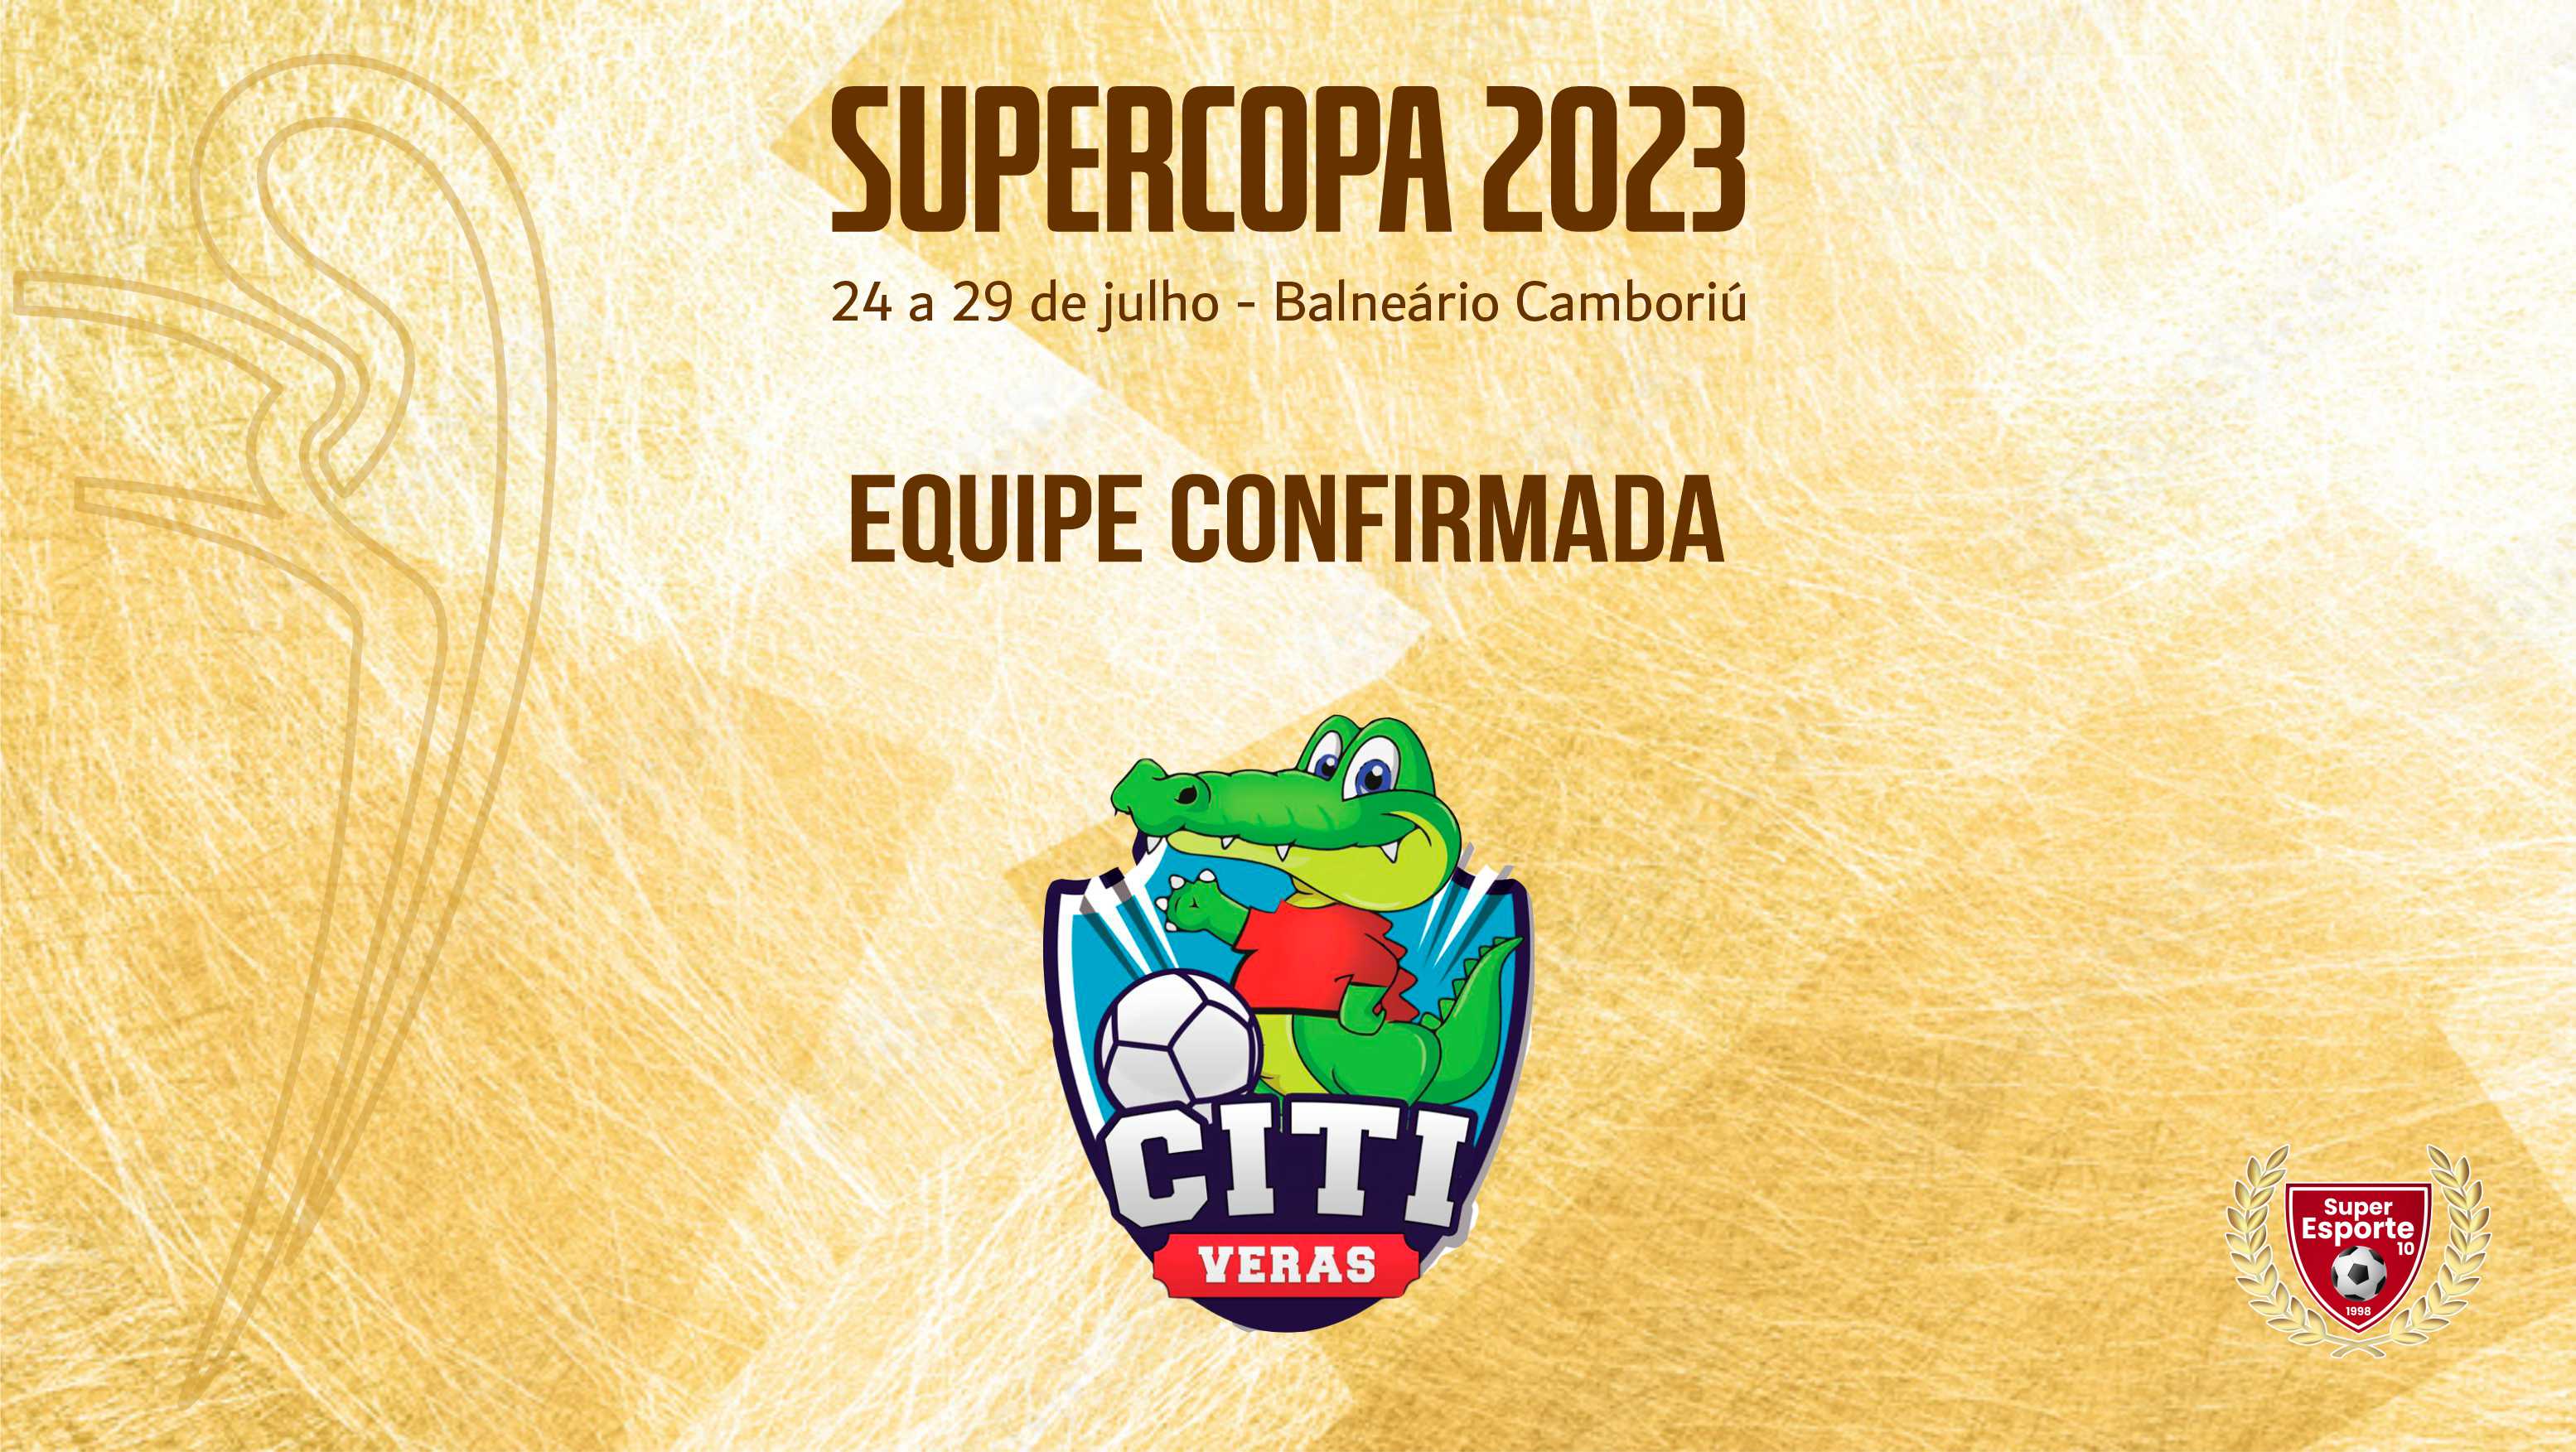 Citi Veras estará na Supercopa em 2023